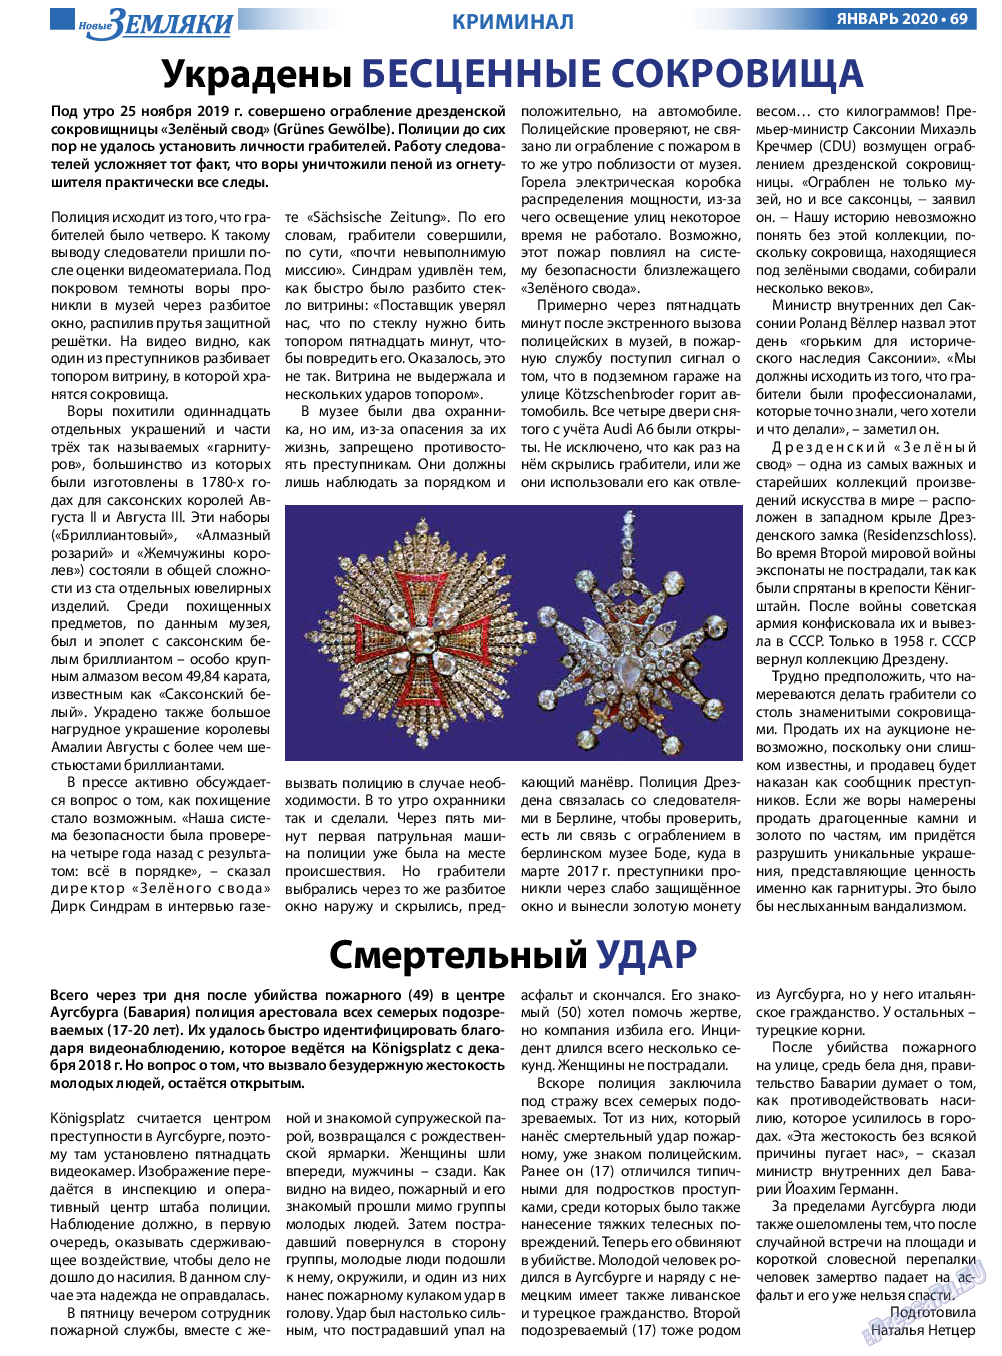 Новые Земляки, газета. 2020 №1 стр.69